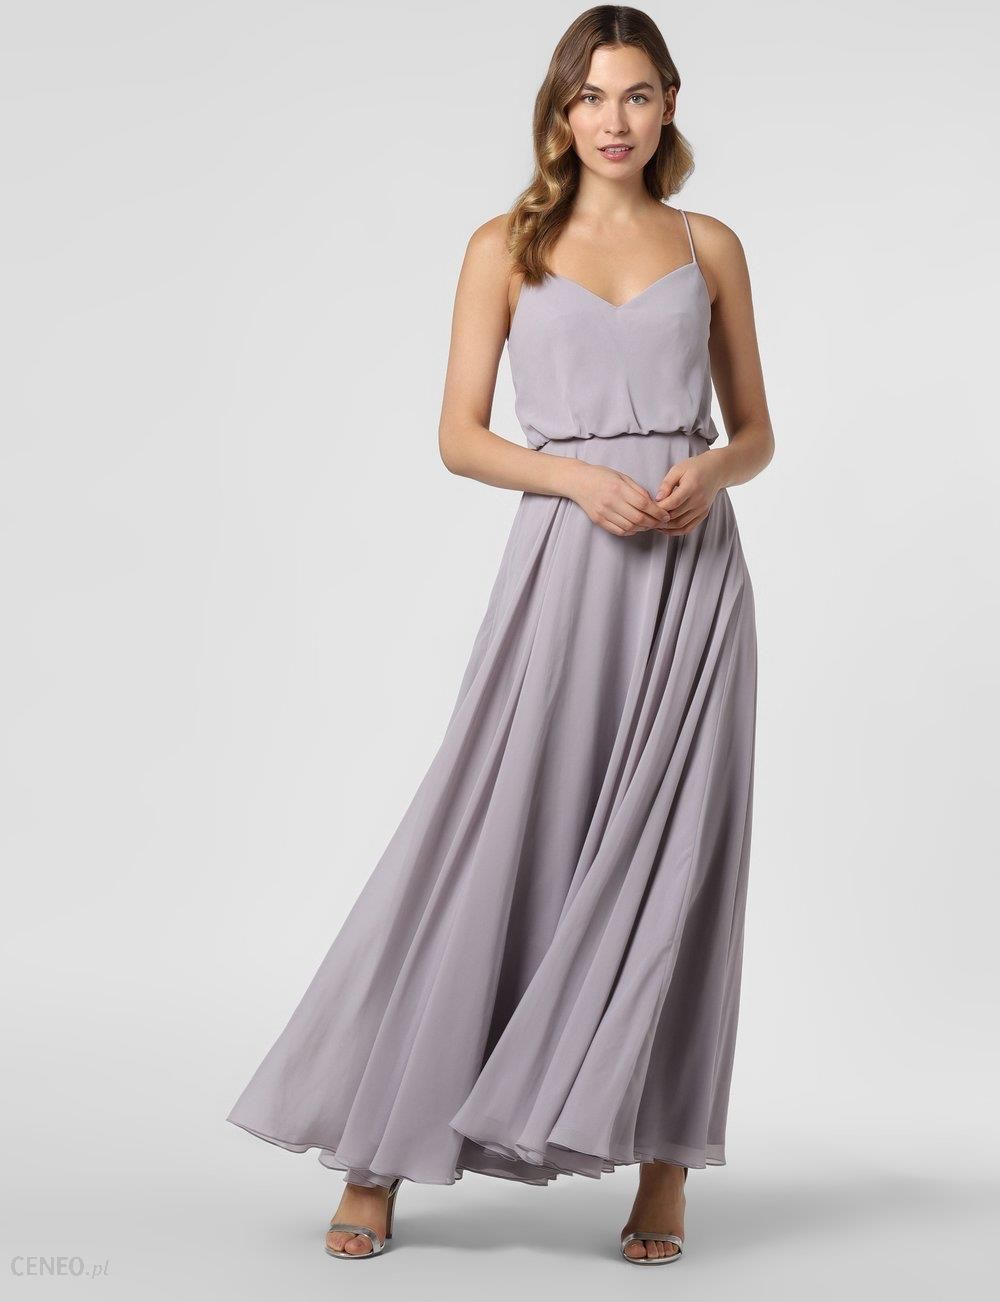 Laona - Damska sukienka wieczorowa, lila - Ceny i opinie 